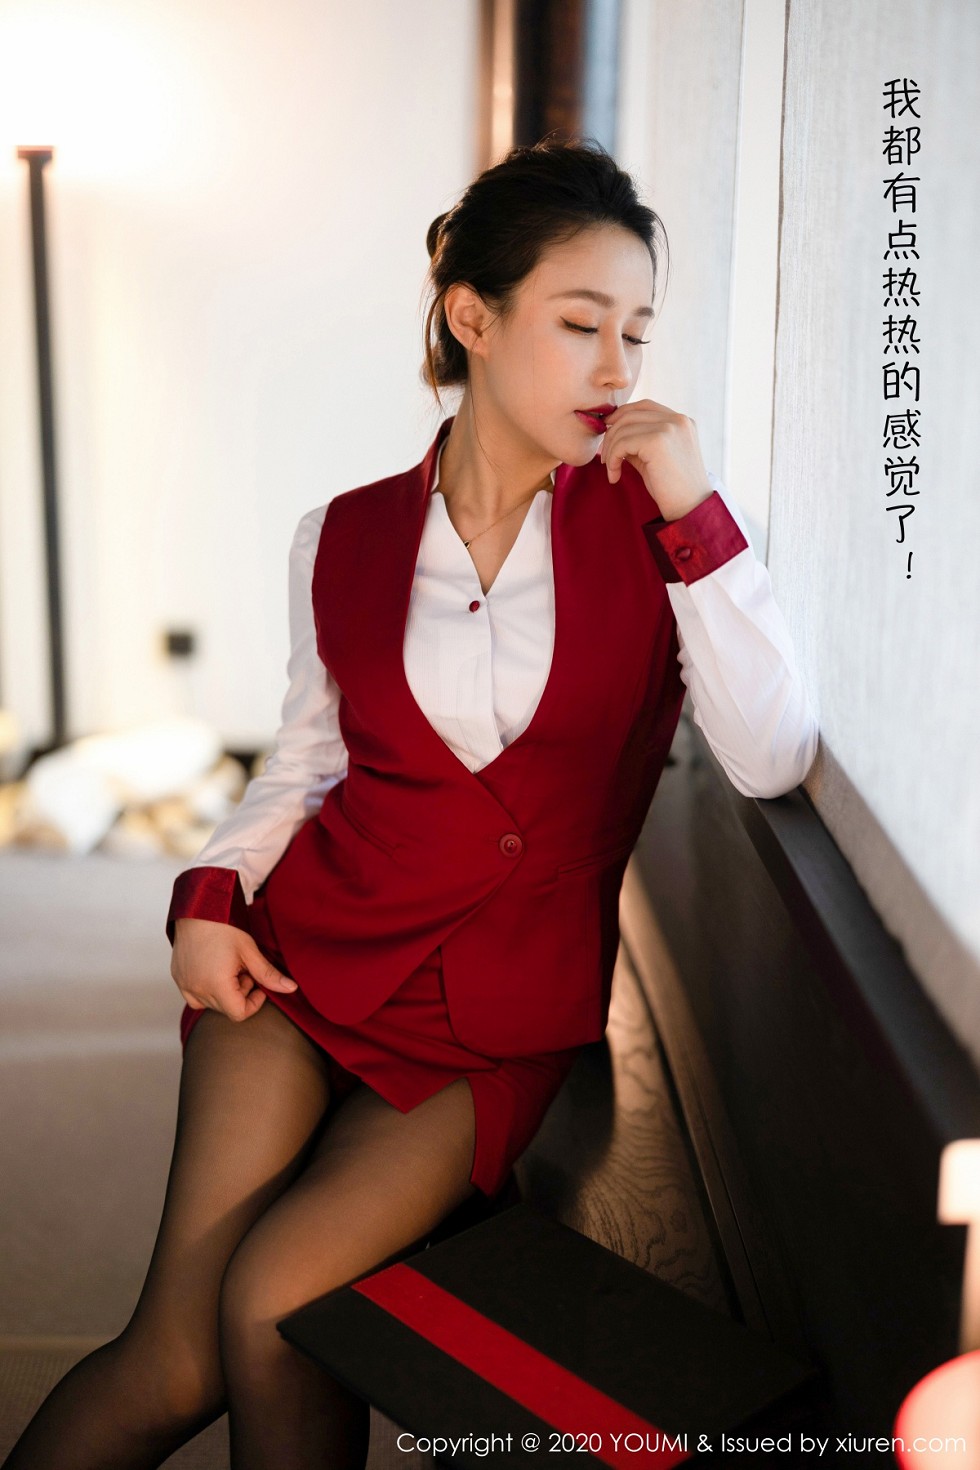 嫩模徐安安杭州旅拍私人管家剧情主题性感红色内衣完美诱惑写真